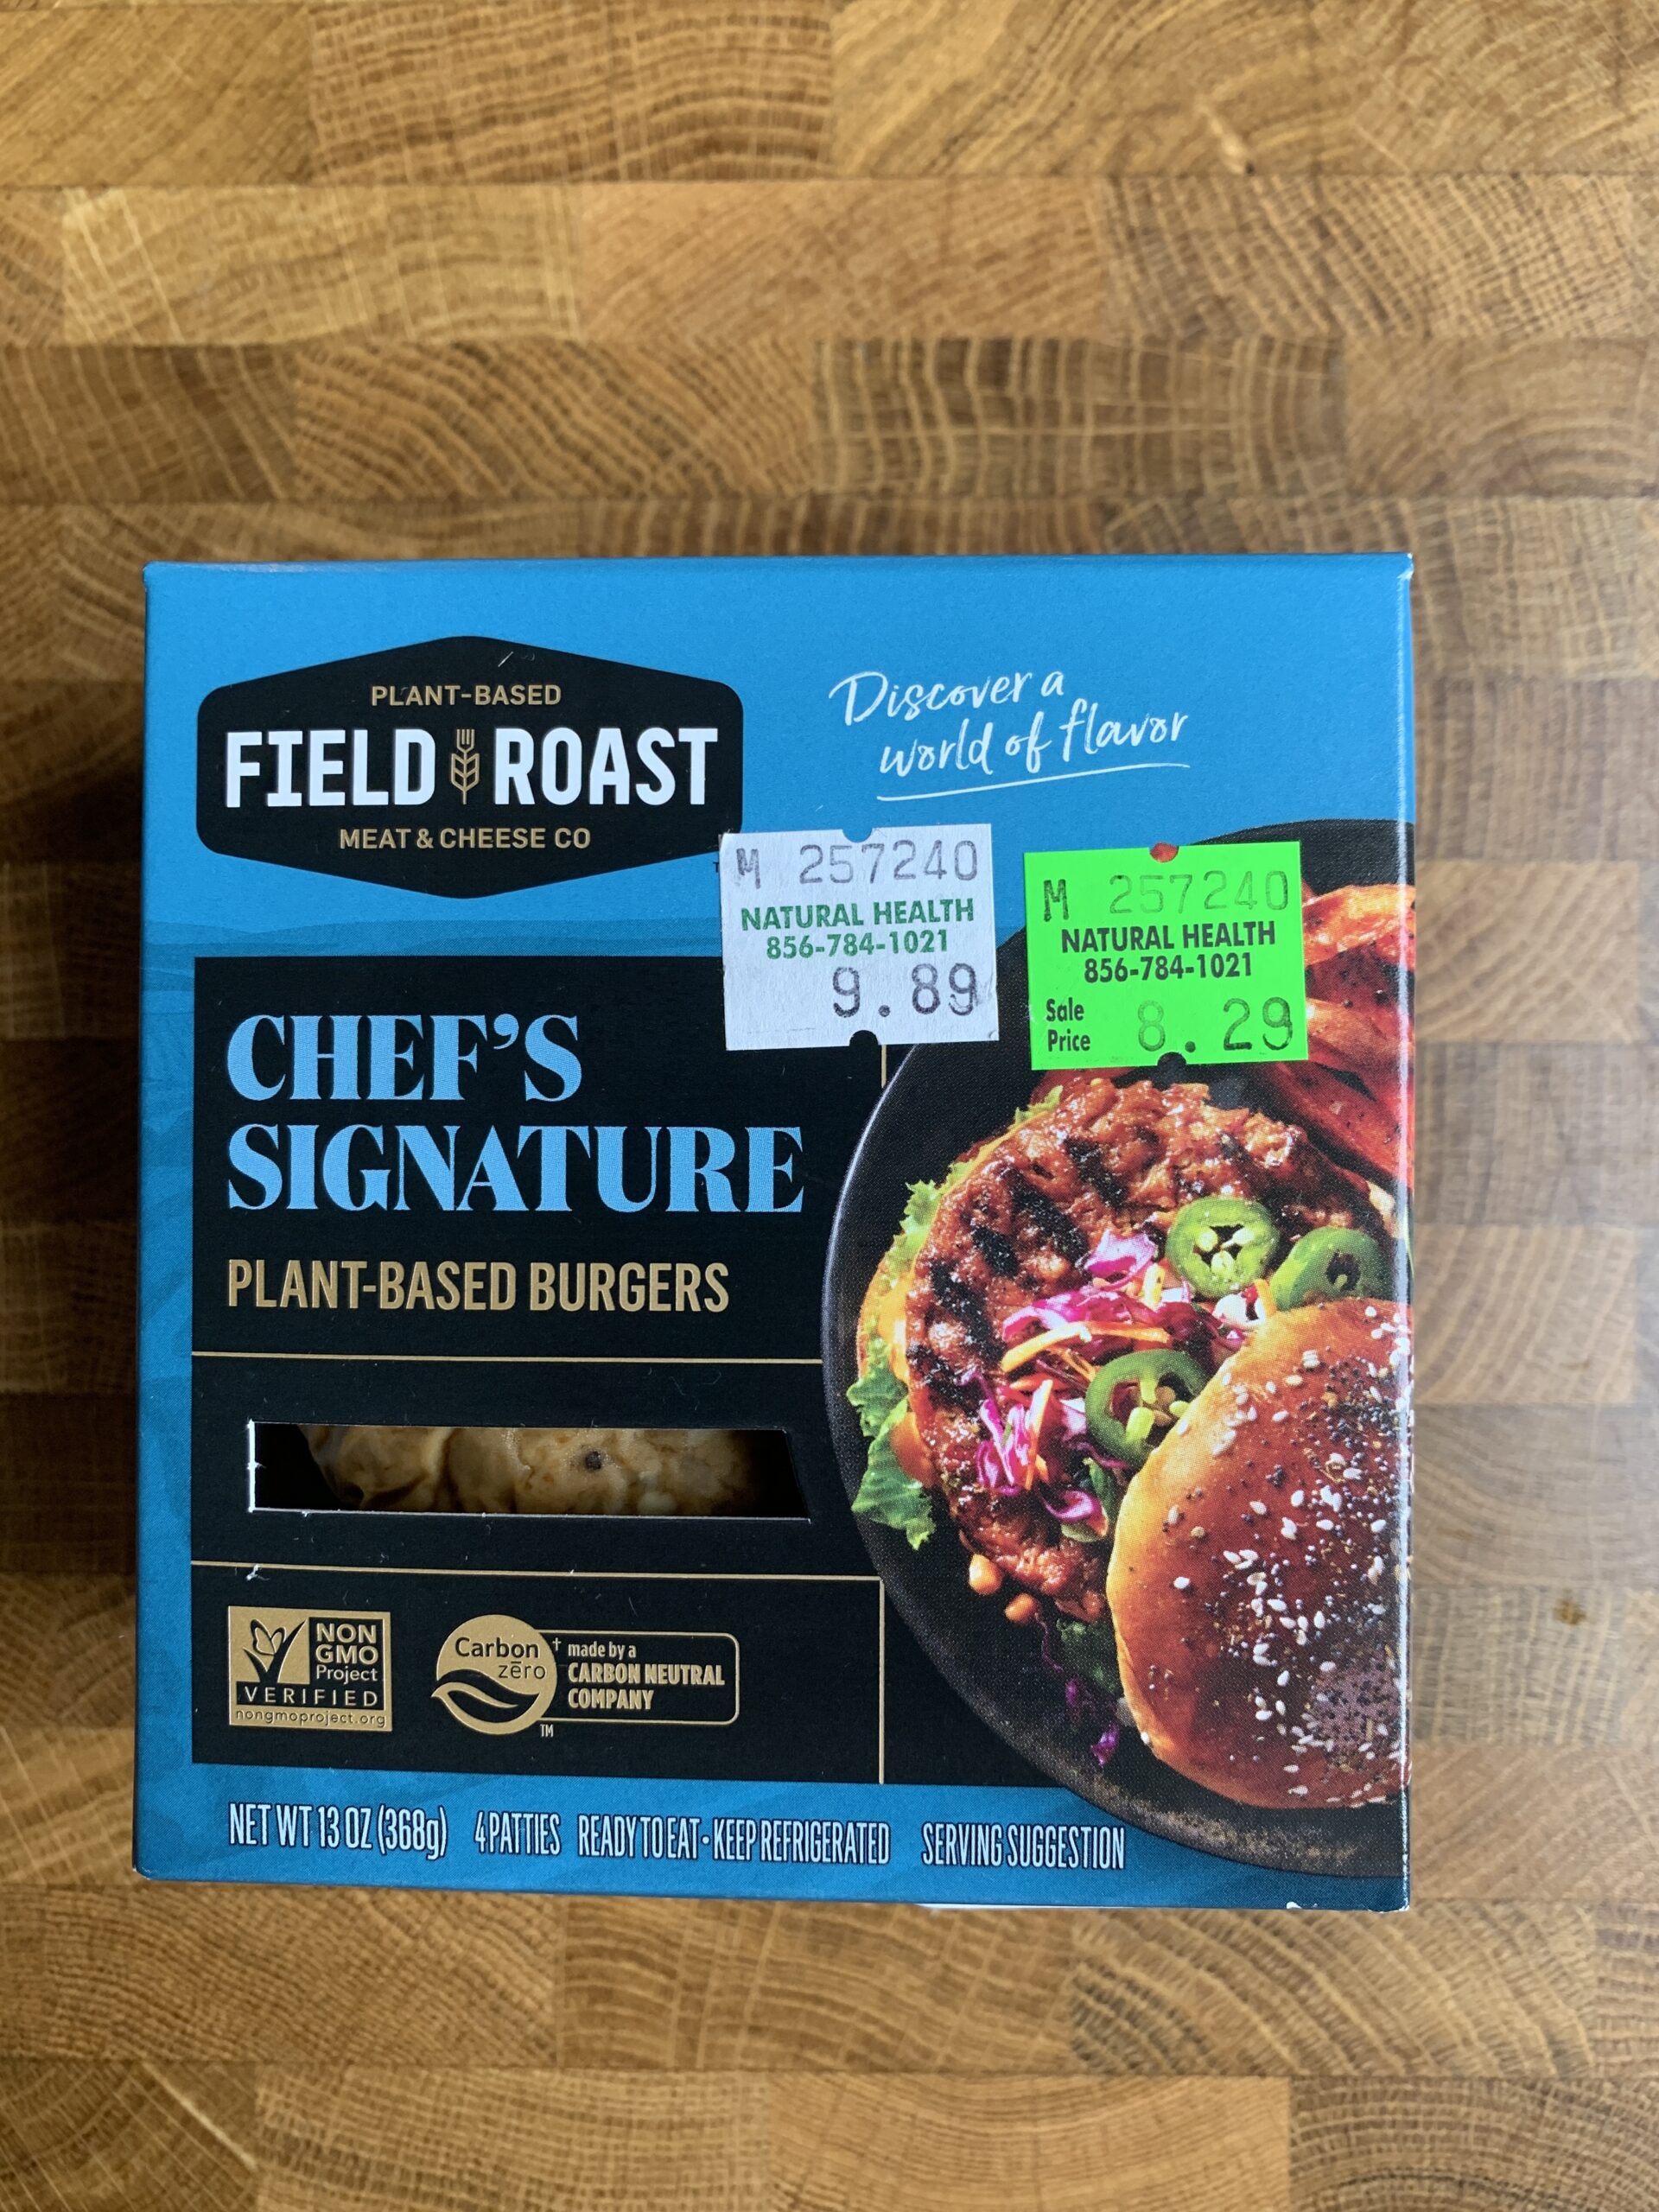 Field Roast plant-based burgers in package.